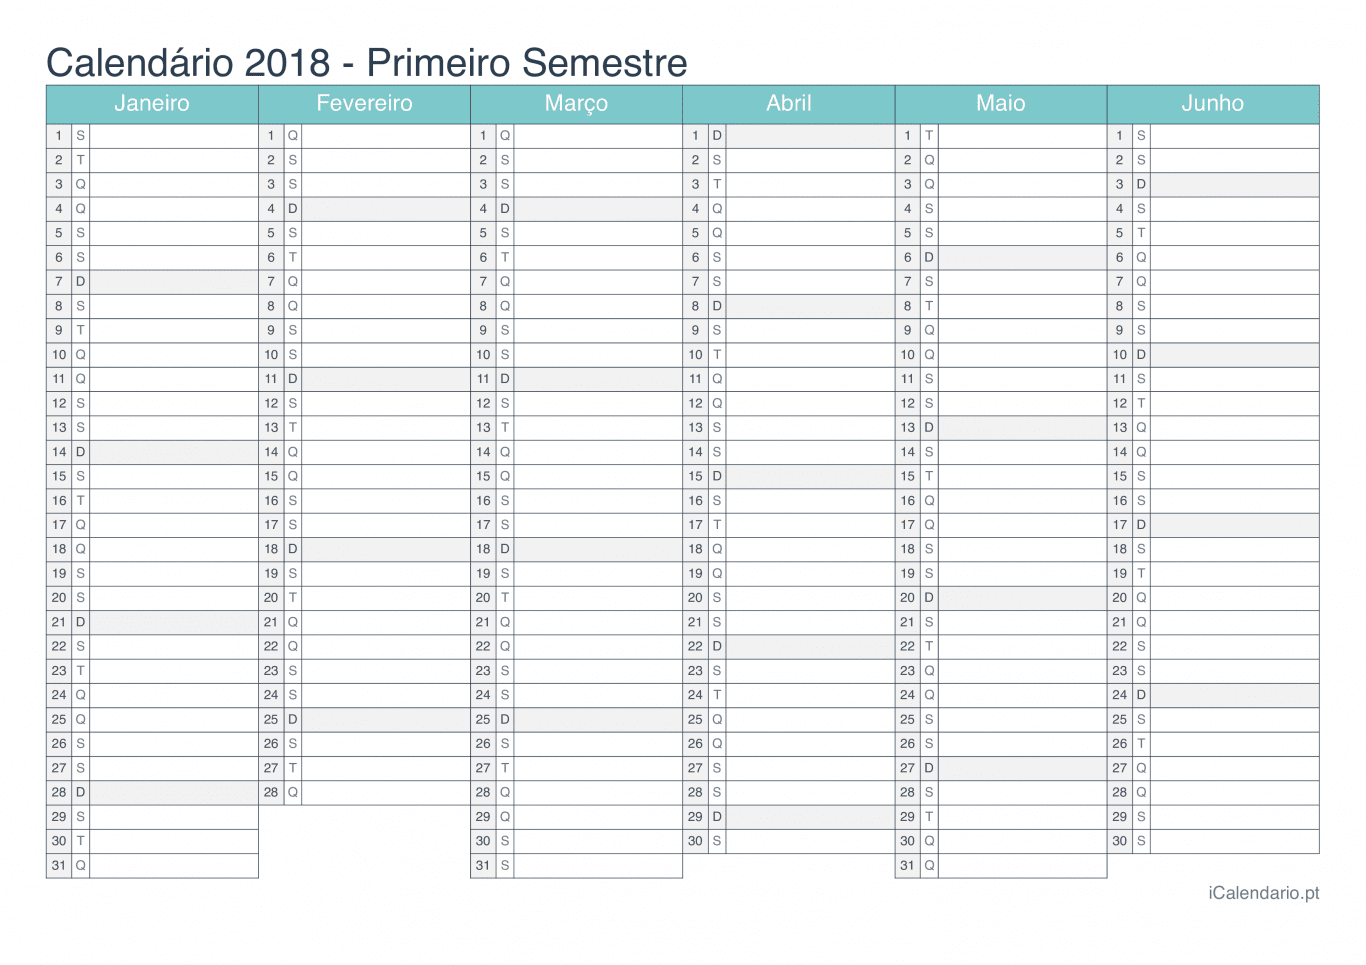 Calendário por semestre 2018 - Turquesa